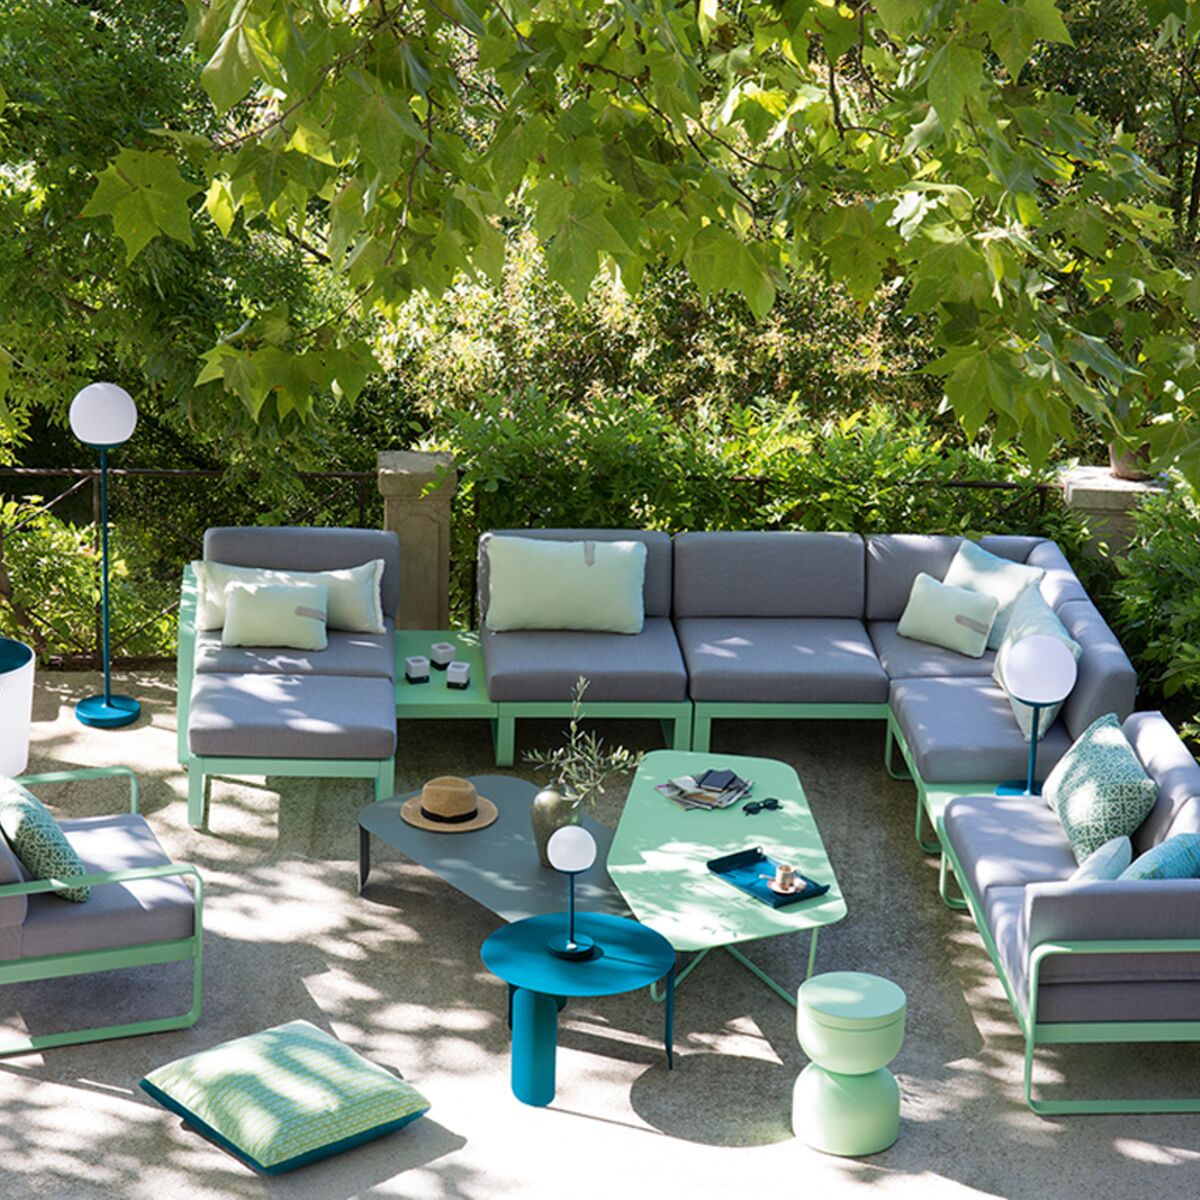 Choisir son mobilier de jardin Fermob pour un petit balcon - Gamm vert